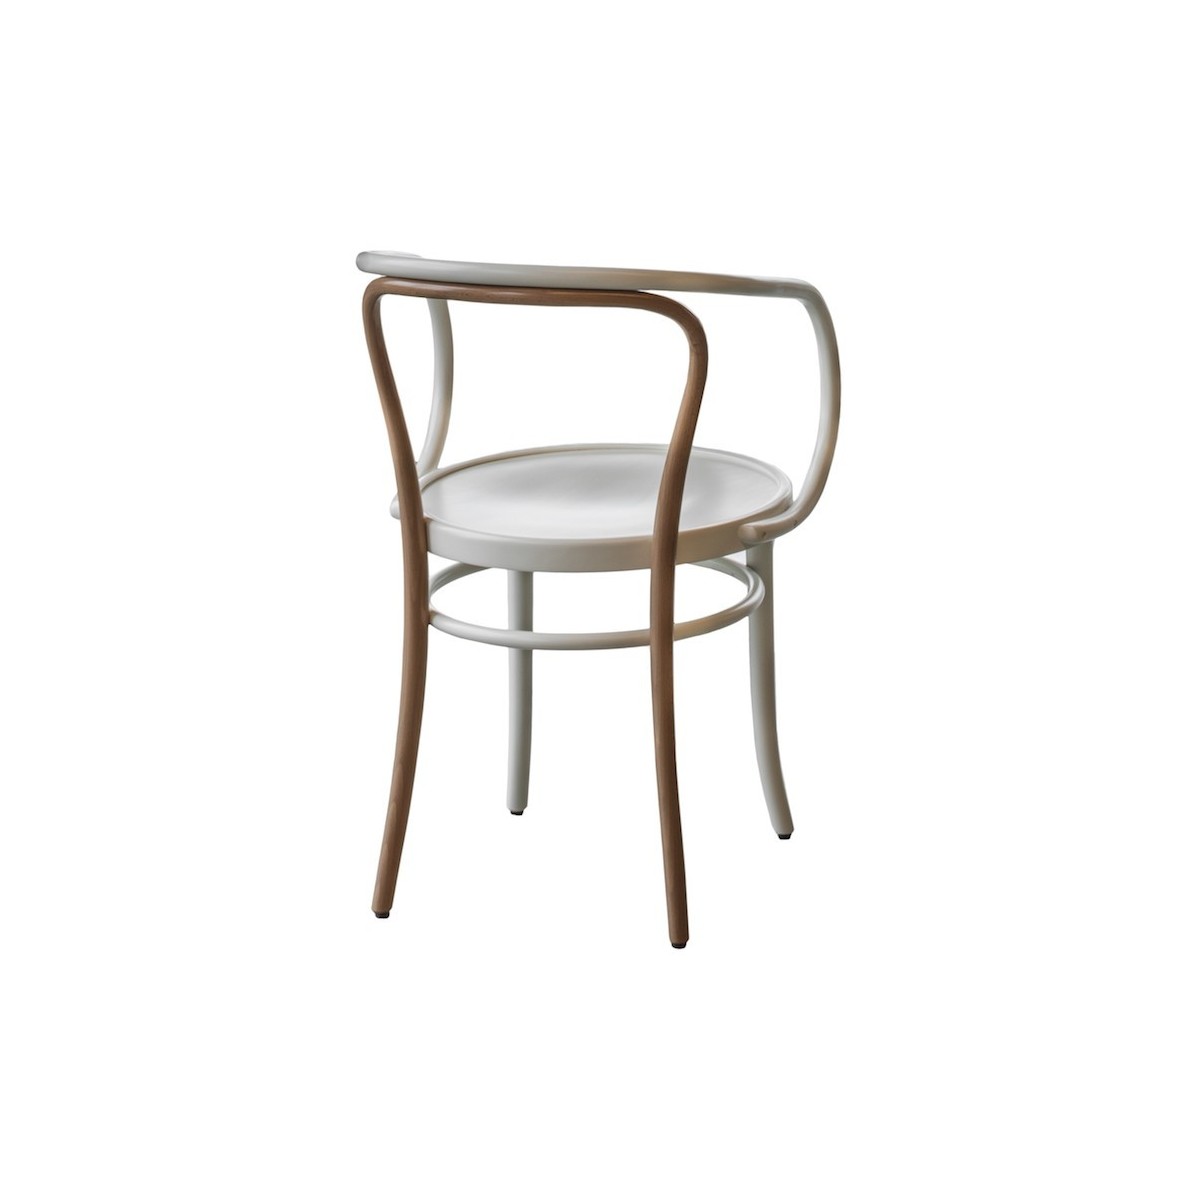 hêtre naturel + peint en blanc + assise contreplaqué - Wiener Stuhl bicolore